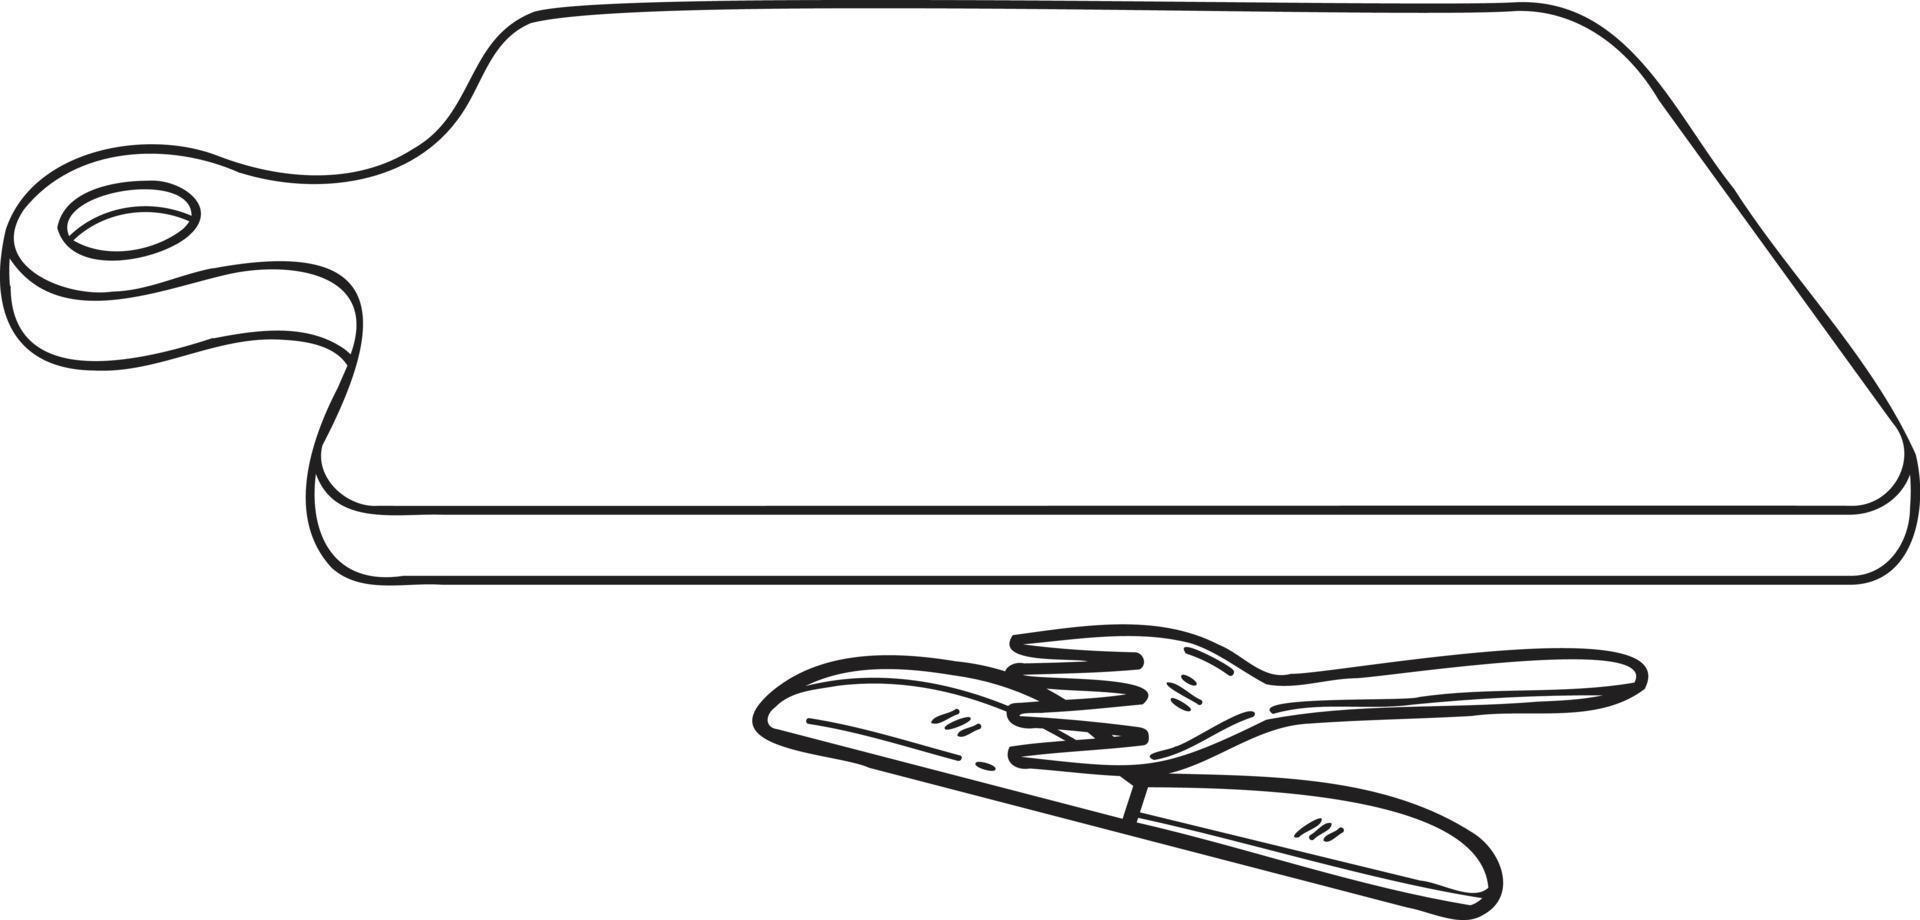 planche à découper en bois dessinée à la main avec illustration de fourchette et couteau dans un style doodle vecteur